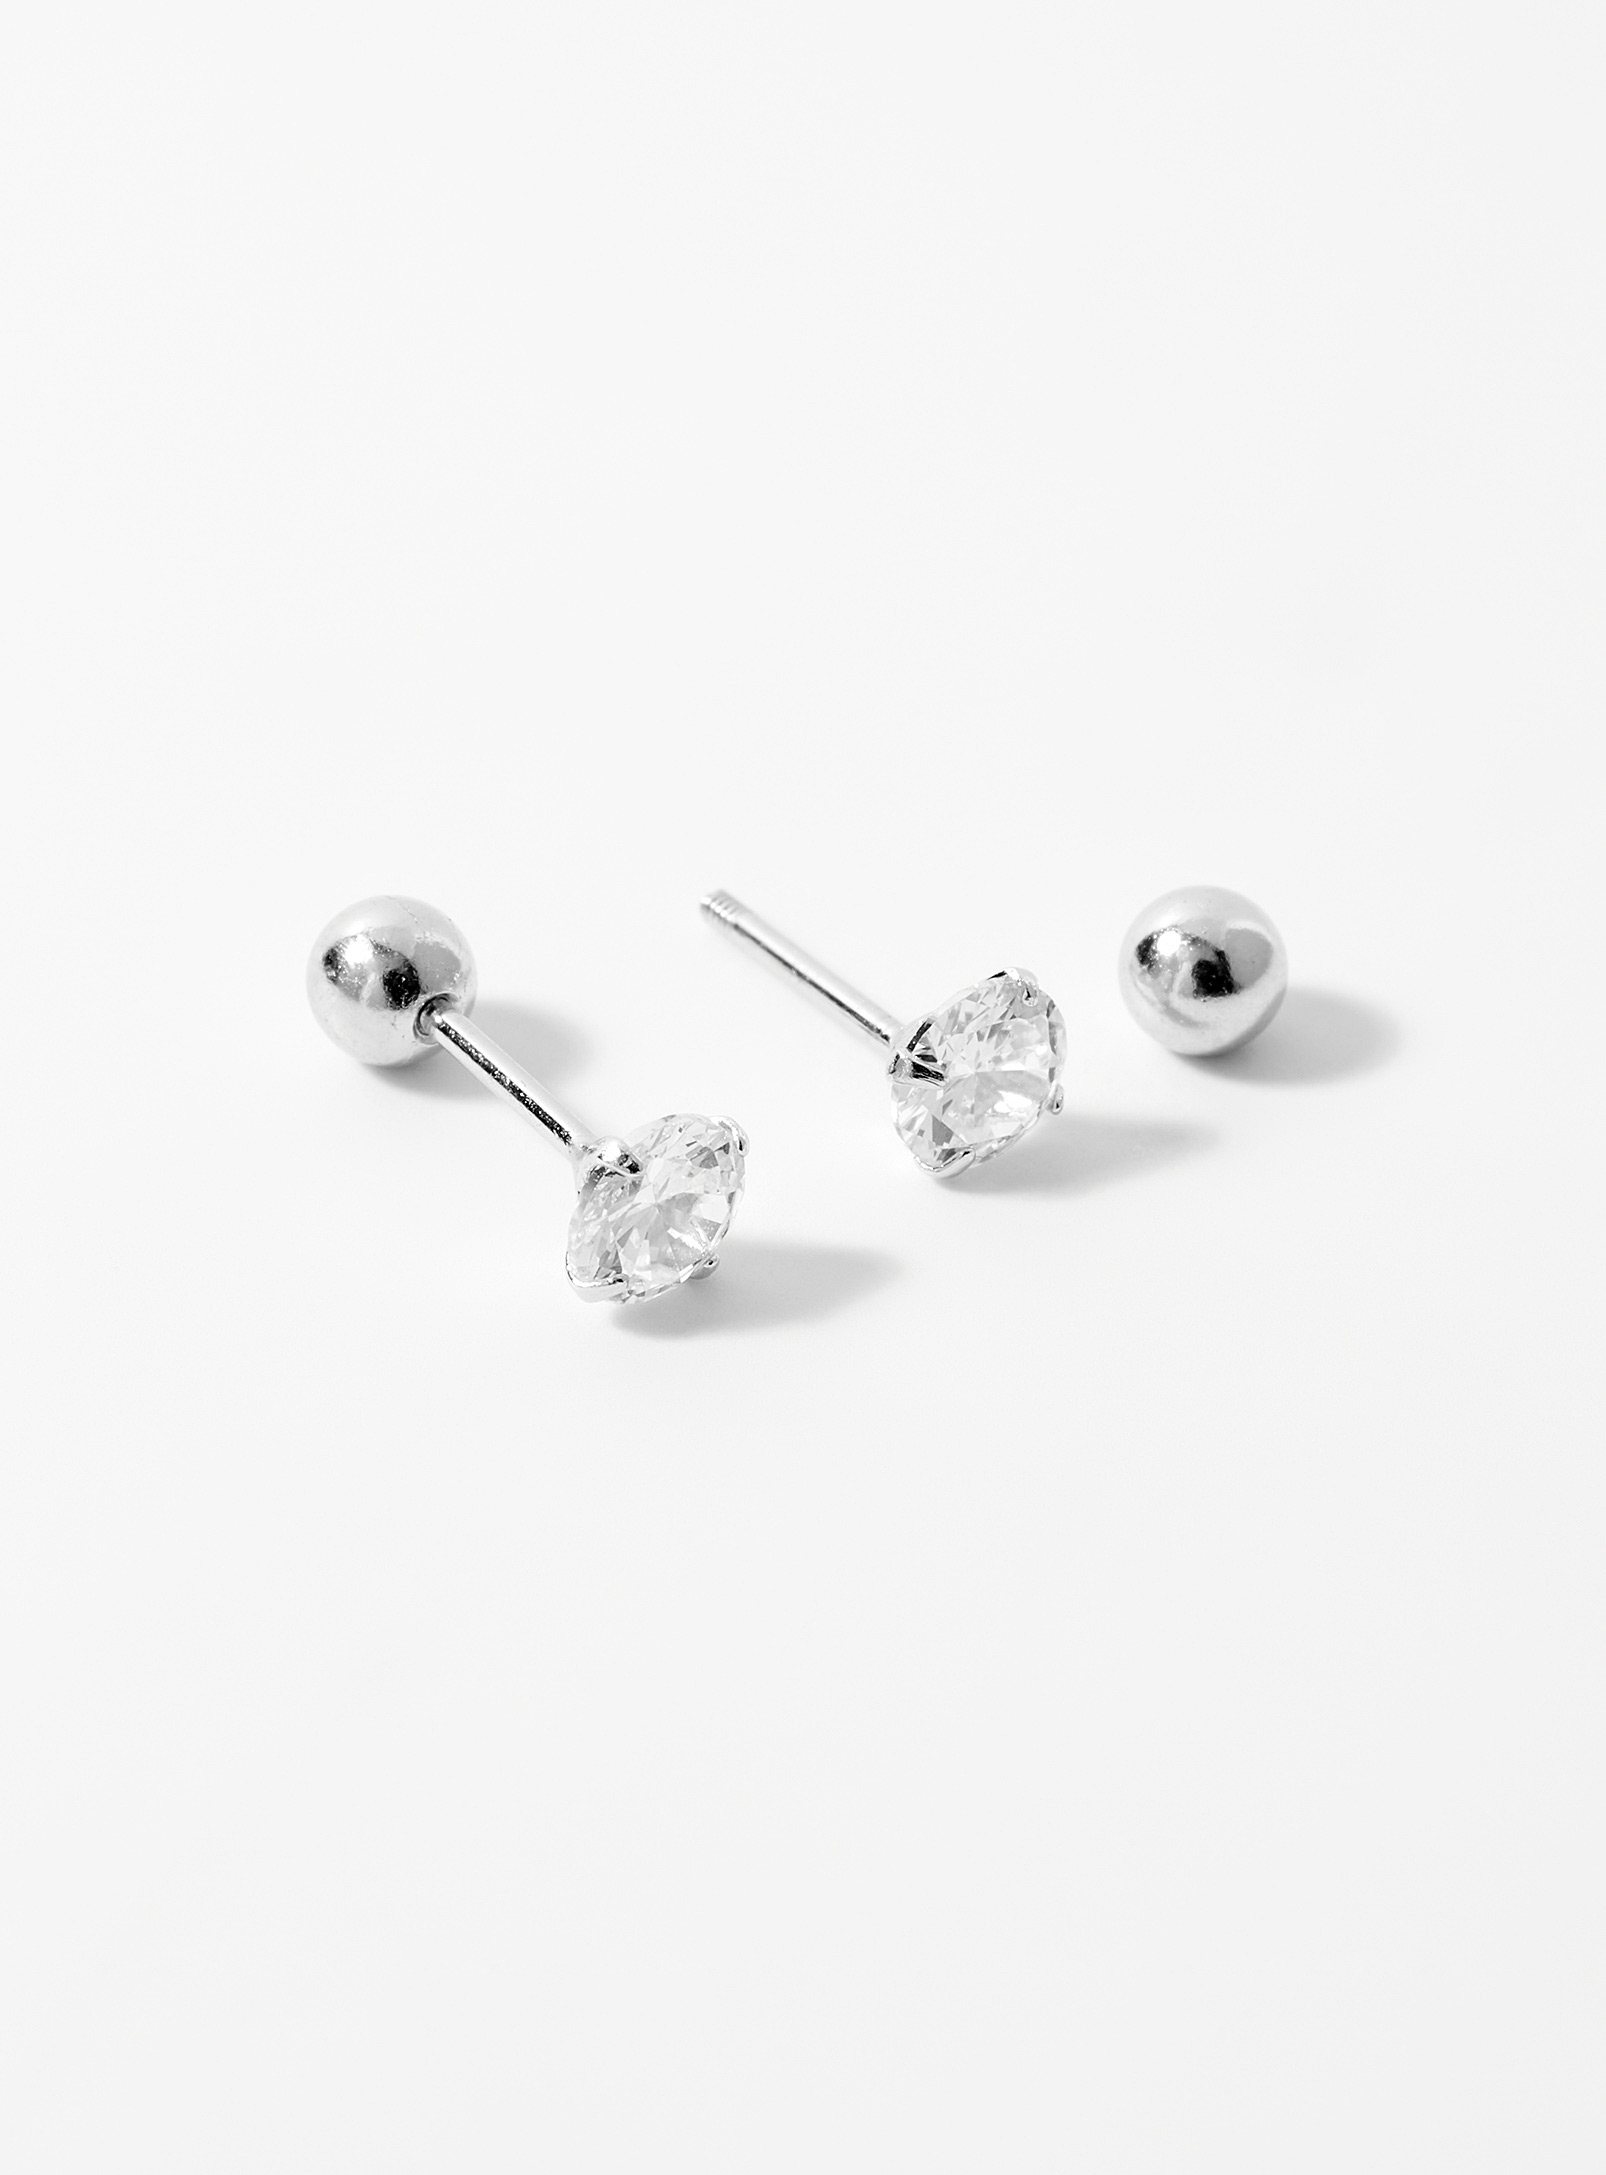 Simons - Women's Cubic zirconia silver earrings